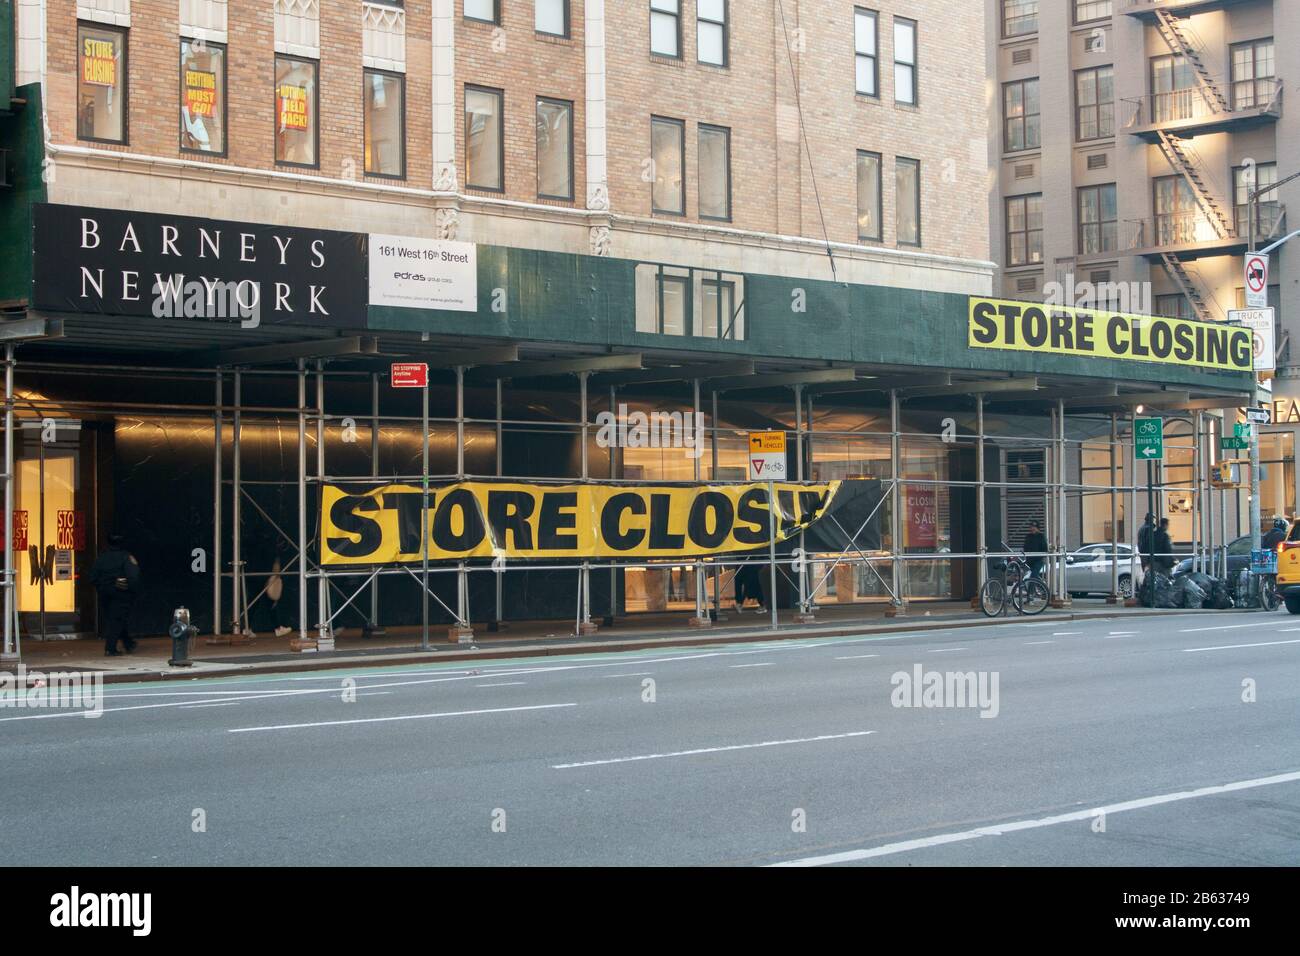 Barneys siebter Avenue Store in New York am 29. Januar 2020. Schilder werben mit ihrem Liquidationsverkauf, nachdem sie bankrott gegangen sind. Stockfoto